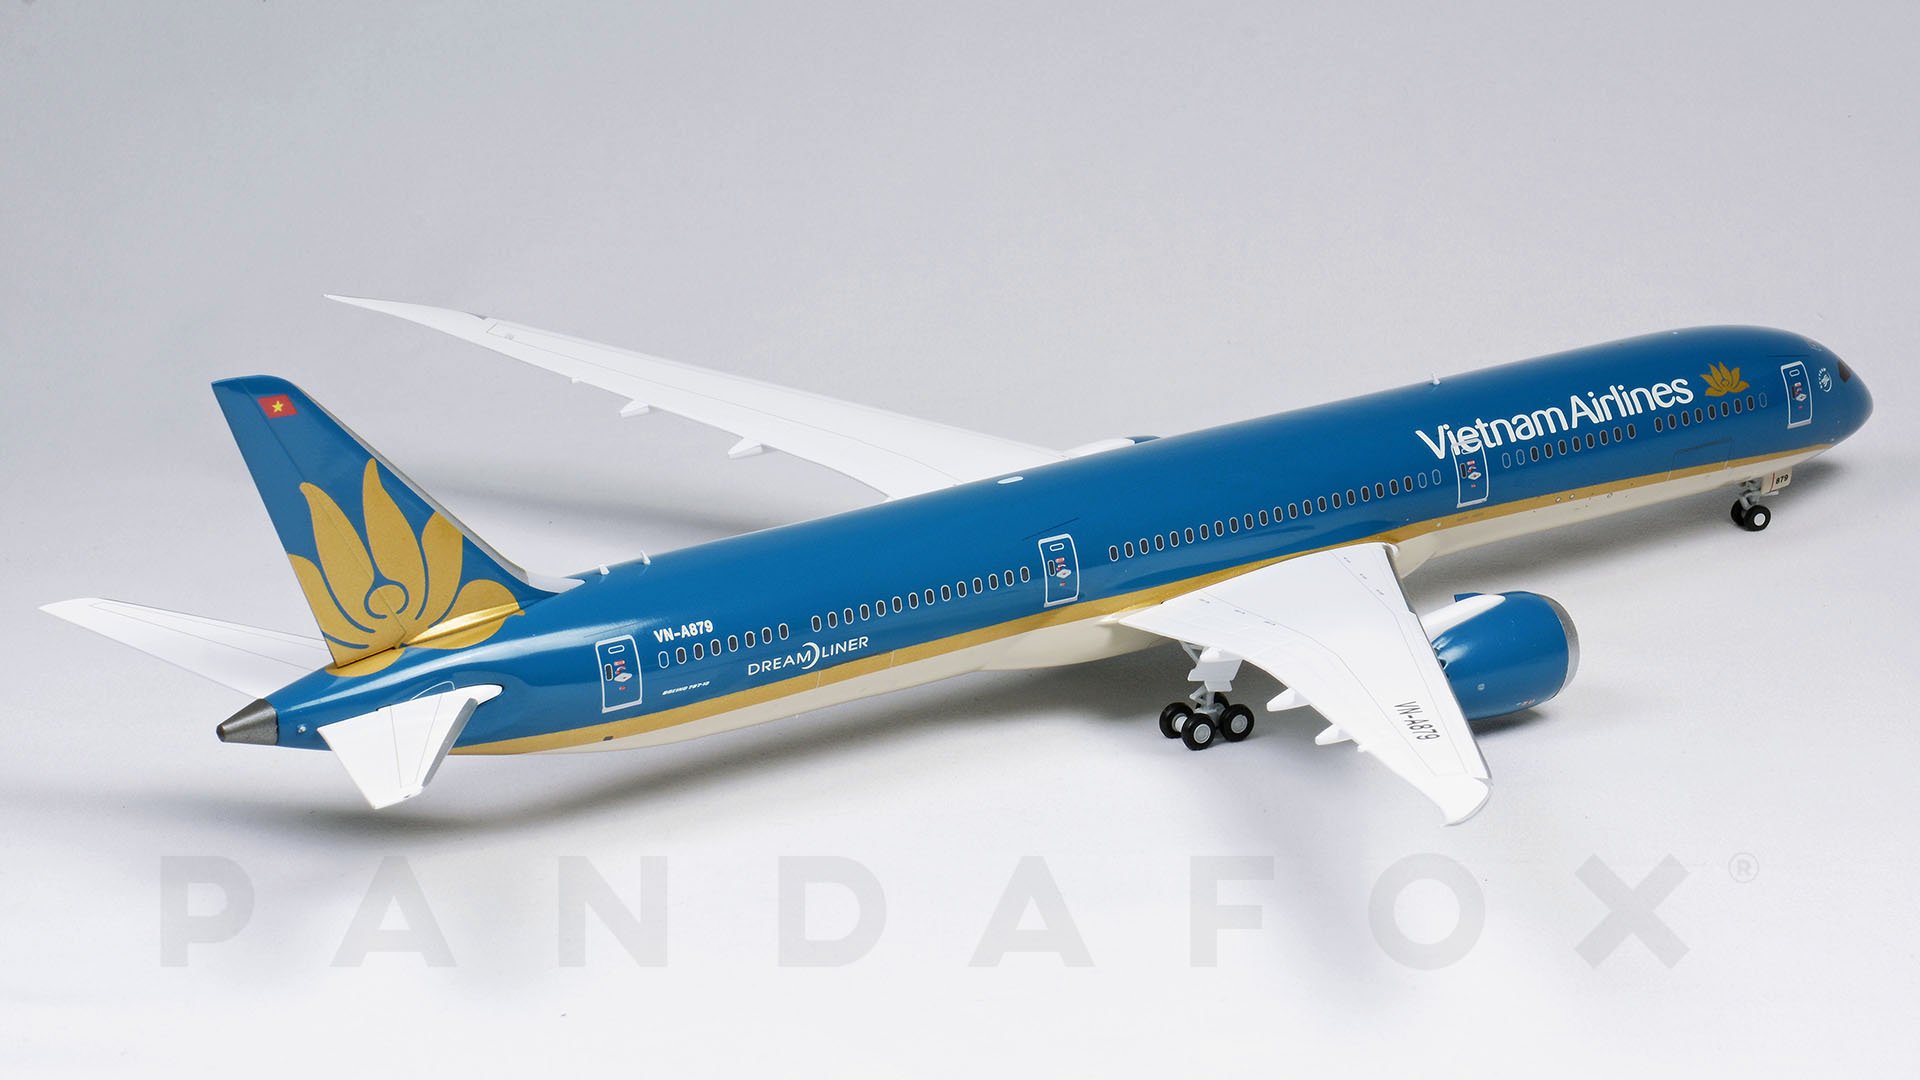 Mô hình máy bay Boeing 787 VietNam Airline  1130